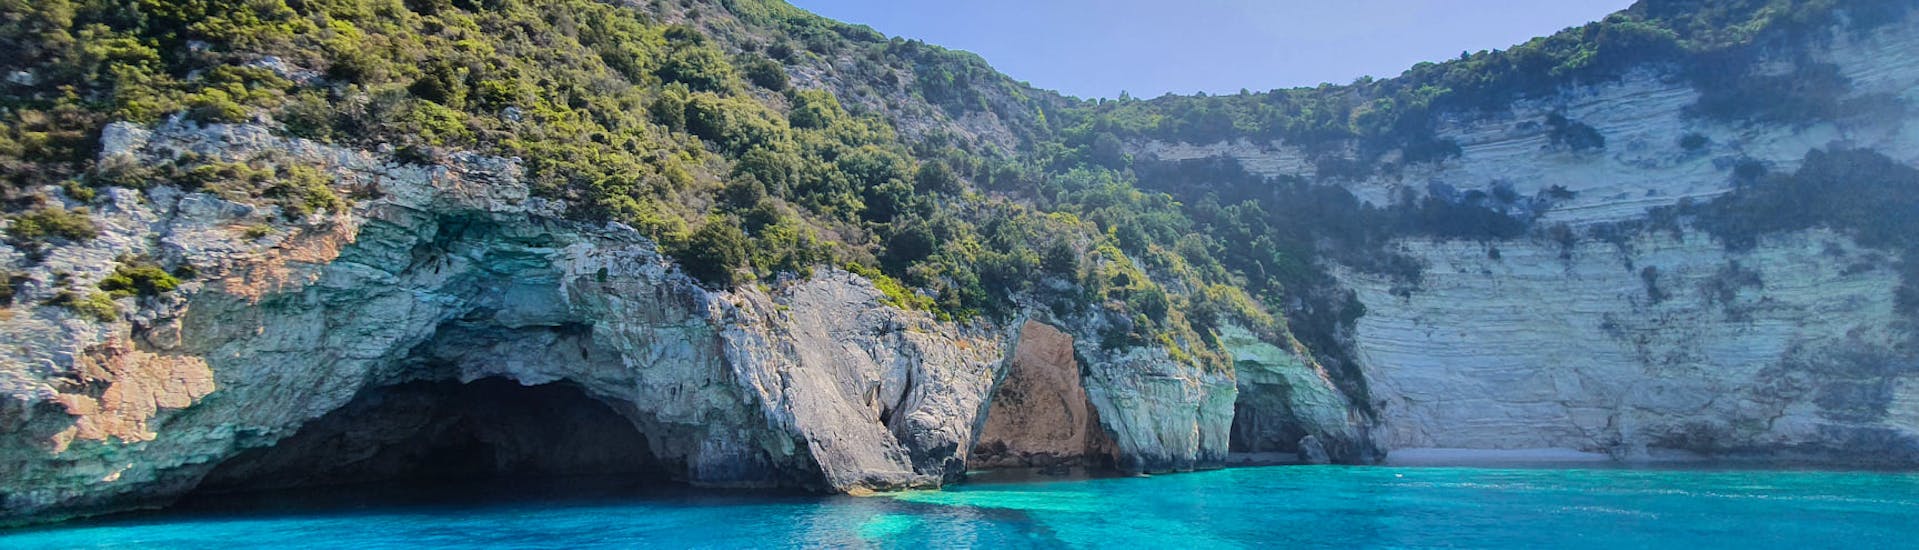 Paseo en barco de Lefkimmi a Papanikolis Cave  & baño en el mar.